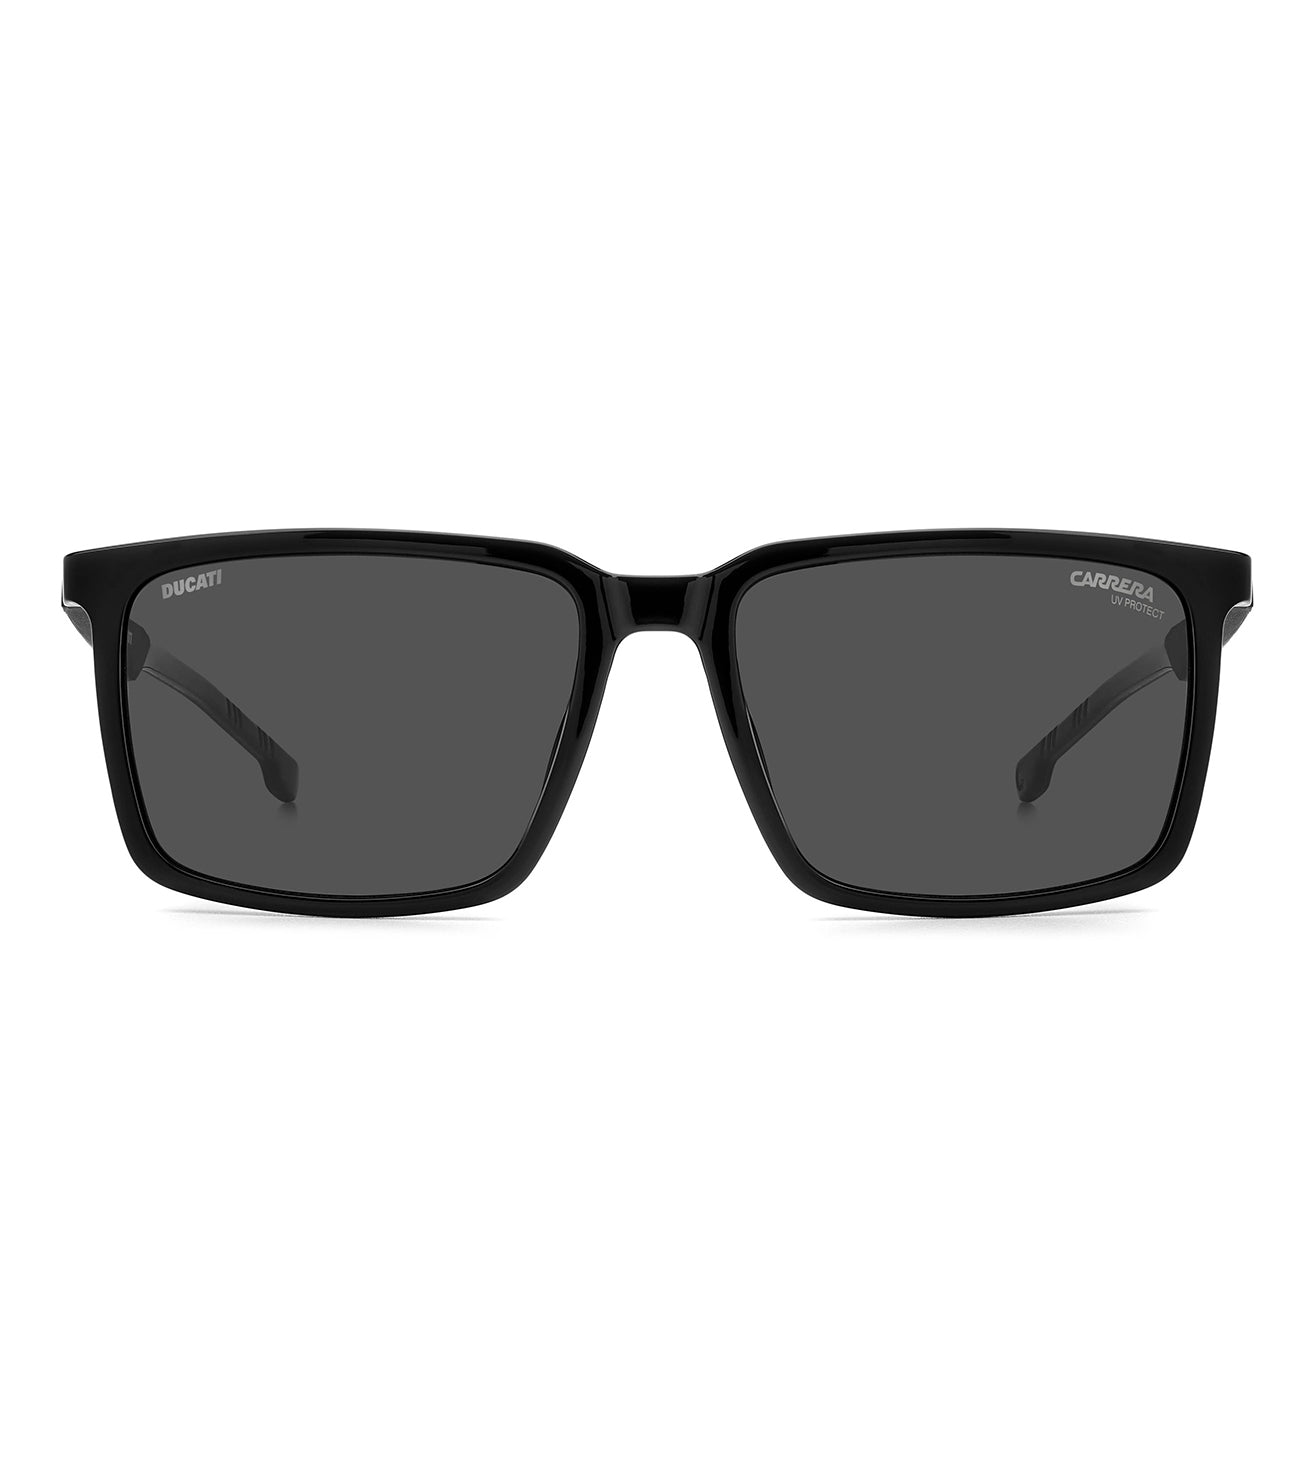 Carrera Men's Grey Square Sunglasses